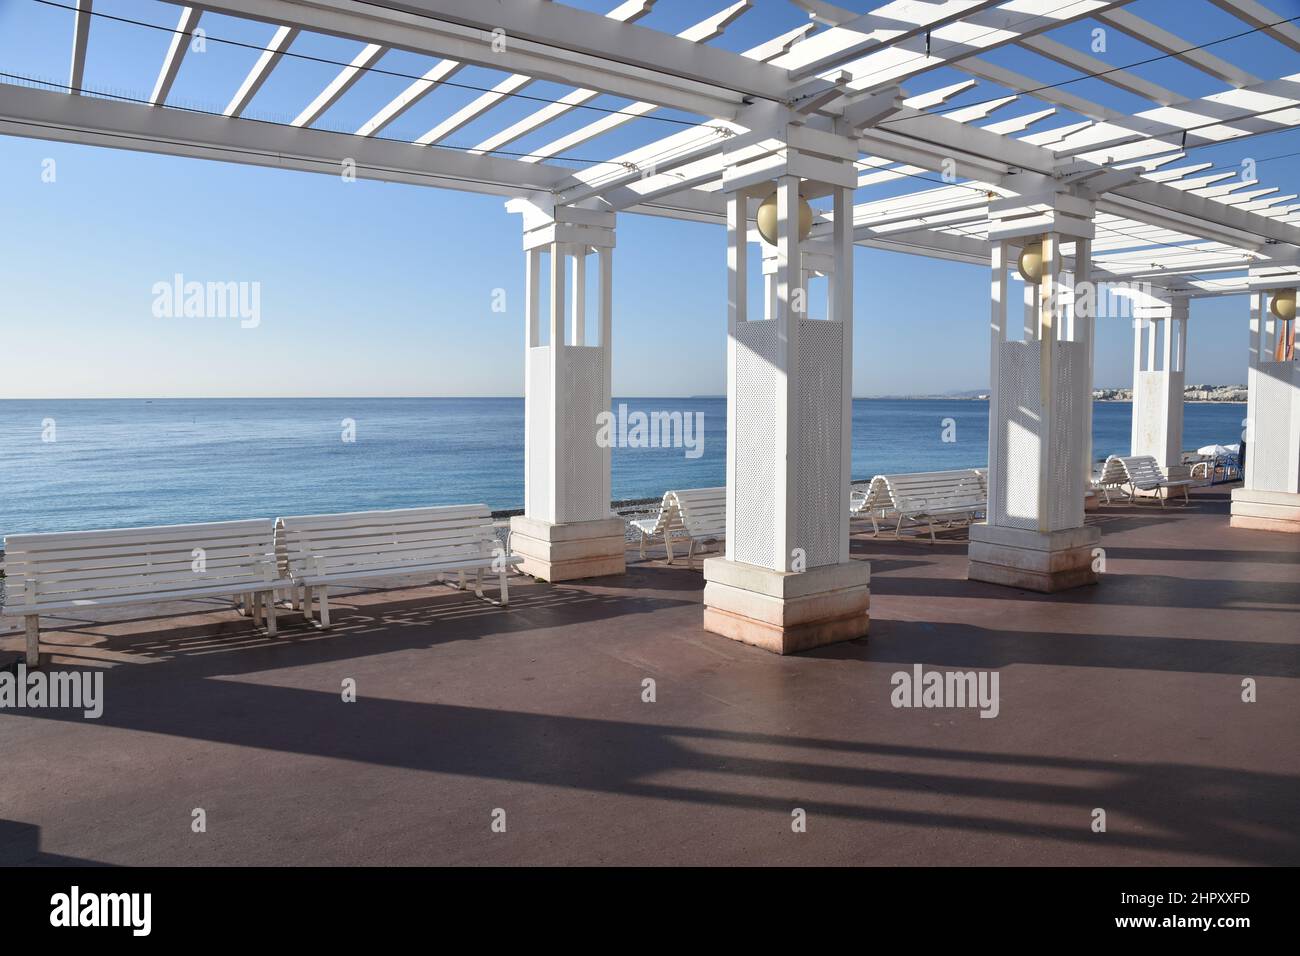 Francia, Côte d'azur, Nice ville, les pergolas et les bancs de la Promenade des Anglais offre une magnifique vue sur le mer Méditerranée. Foto Stock